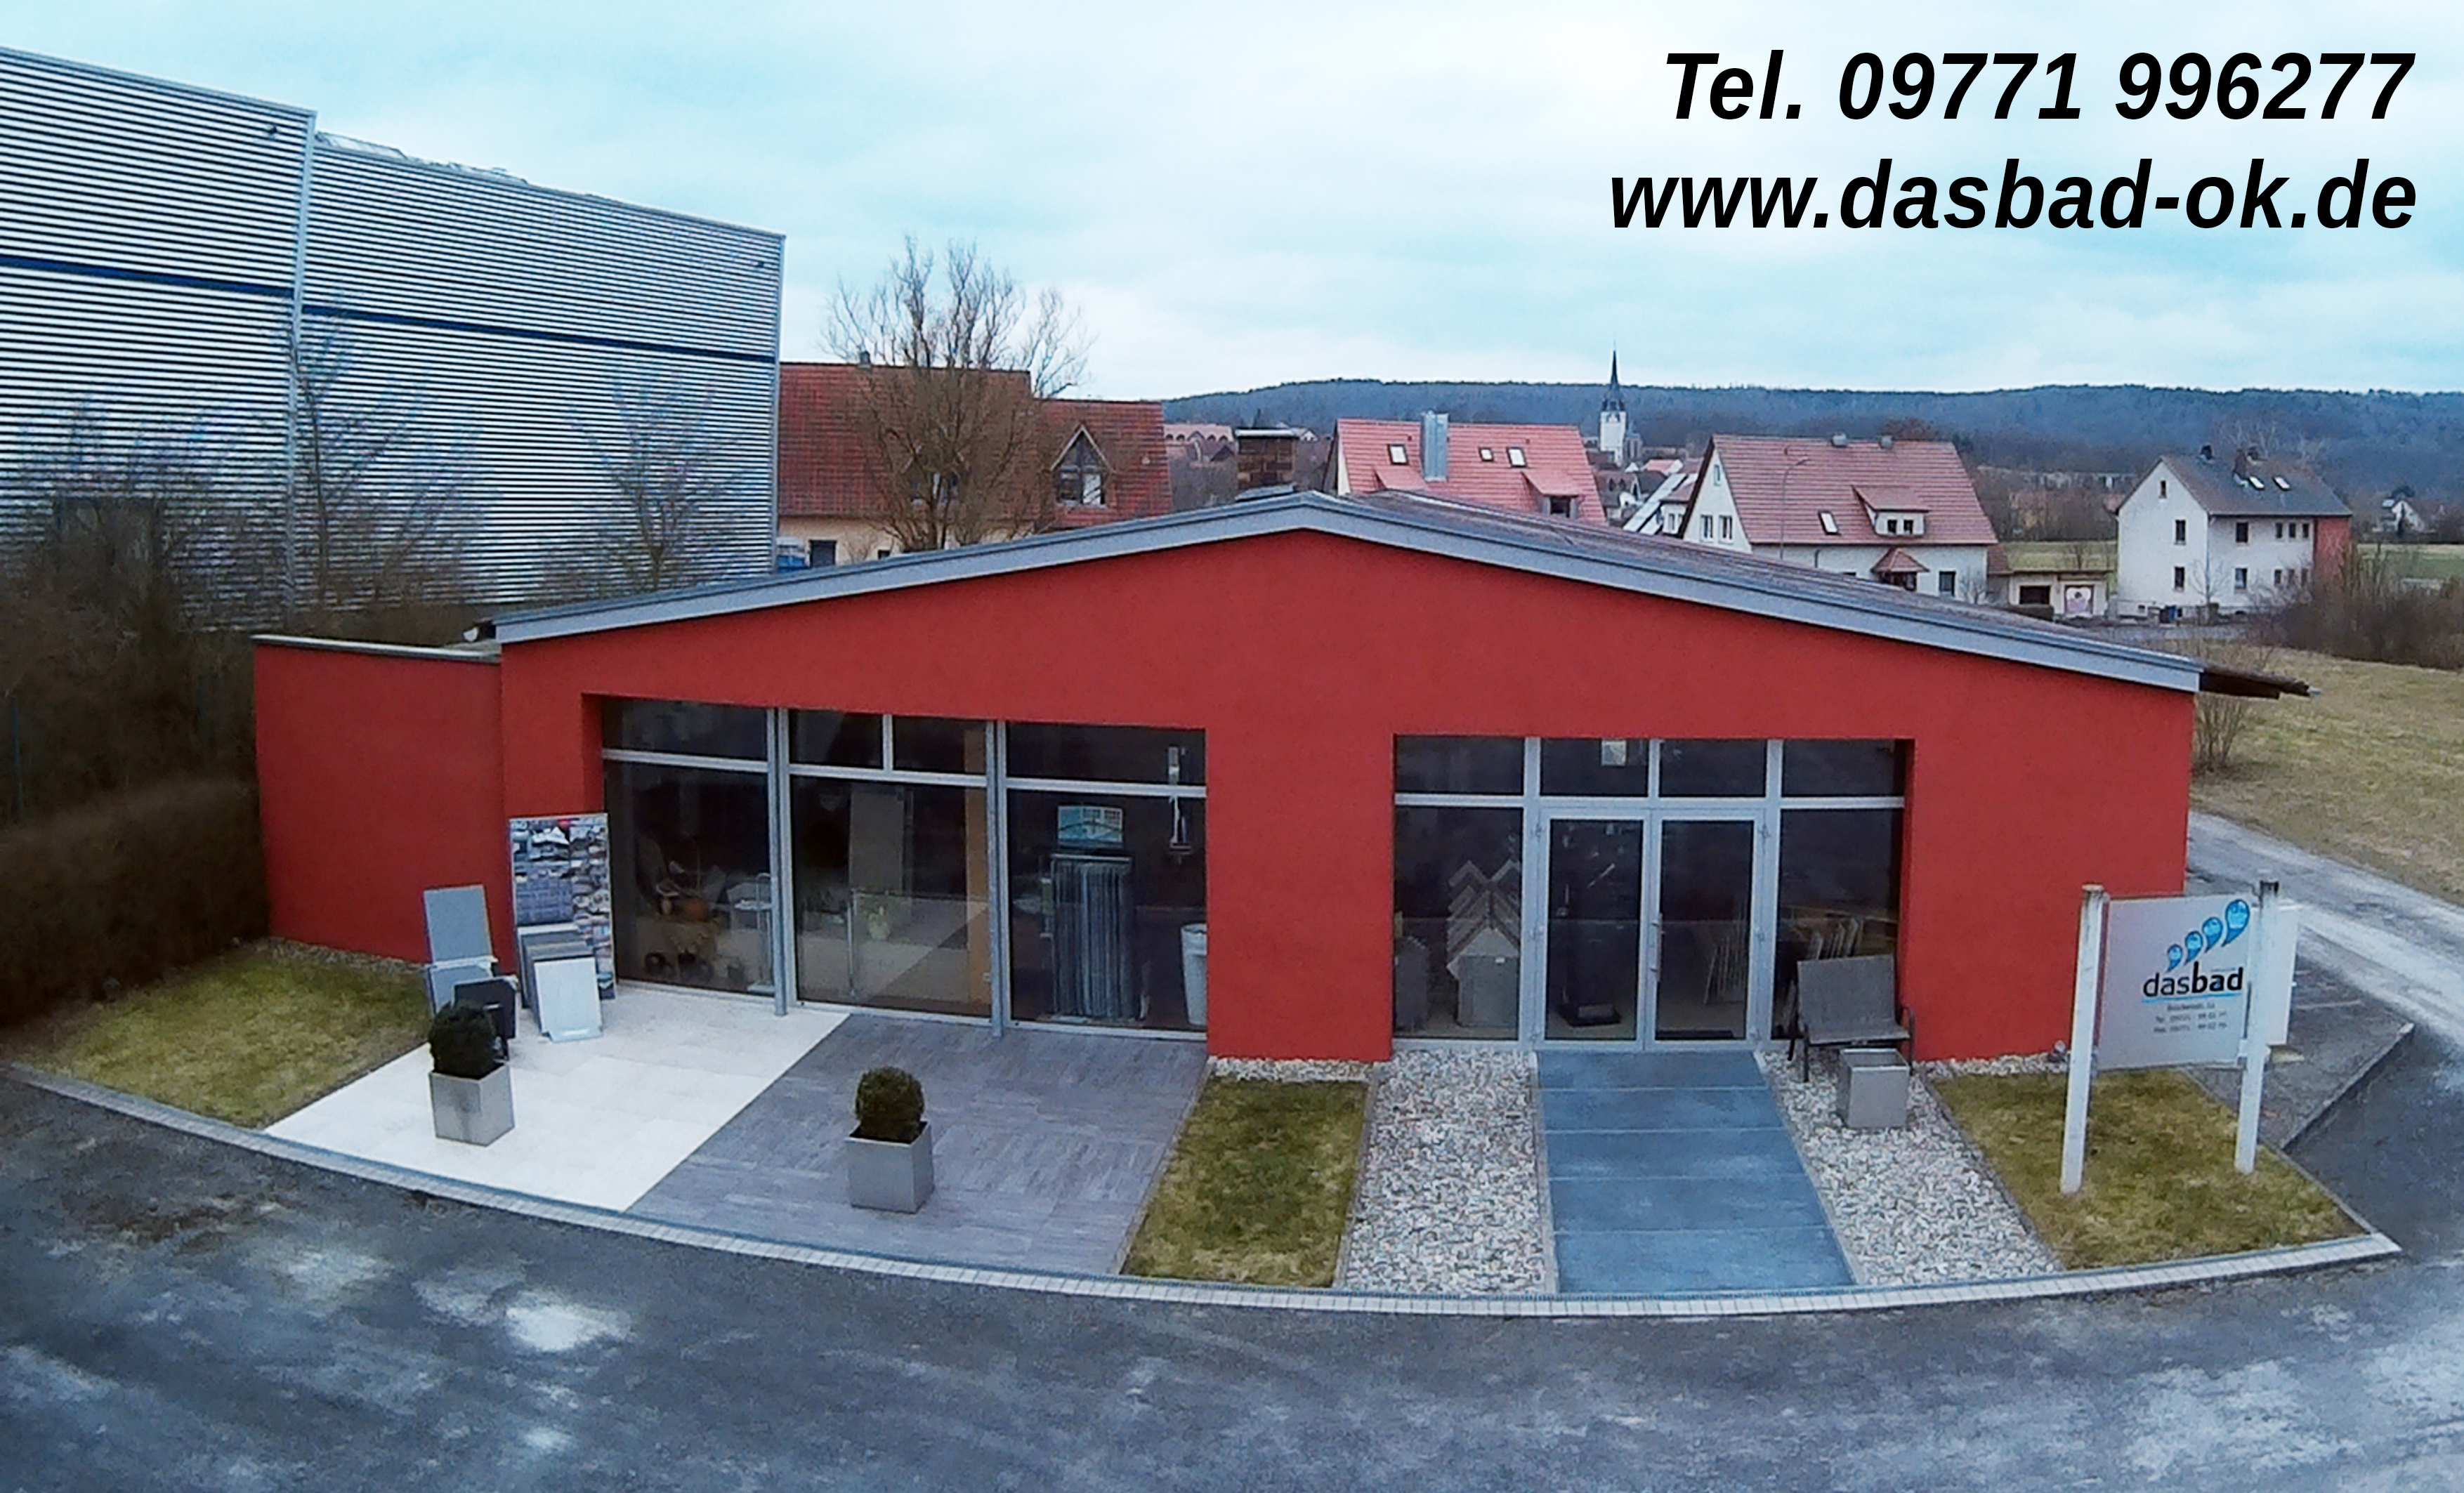 Bilder Das Bad GmbH & Co. KG